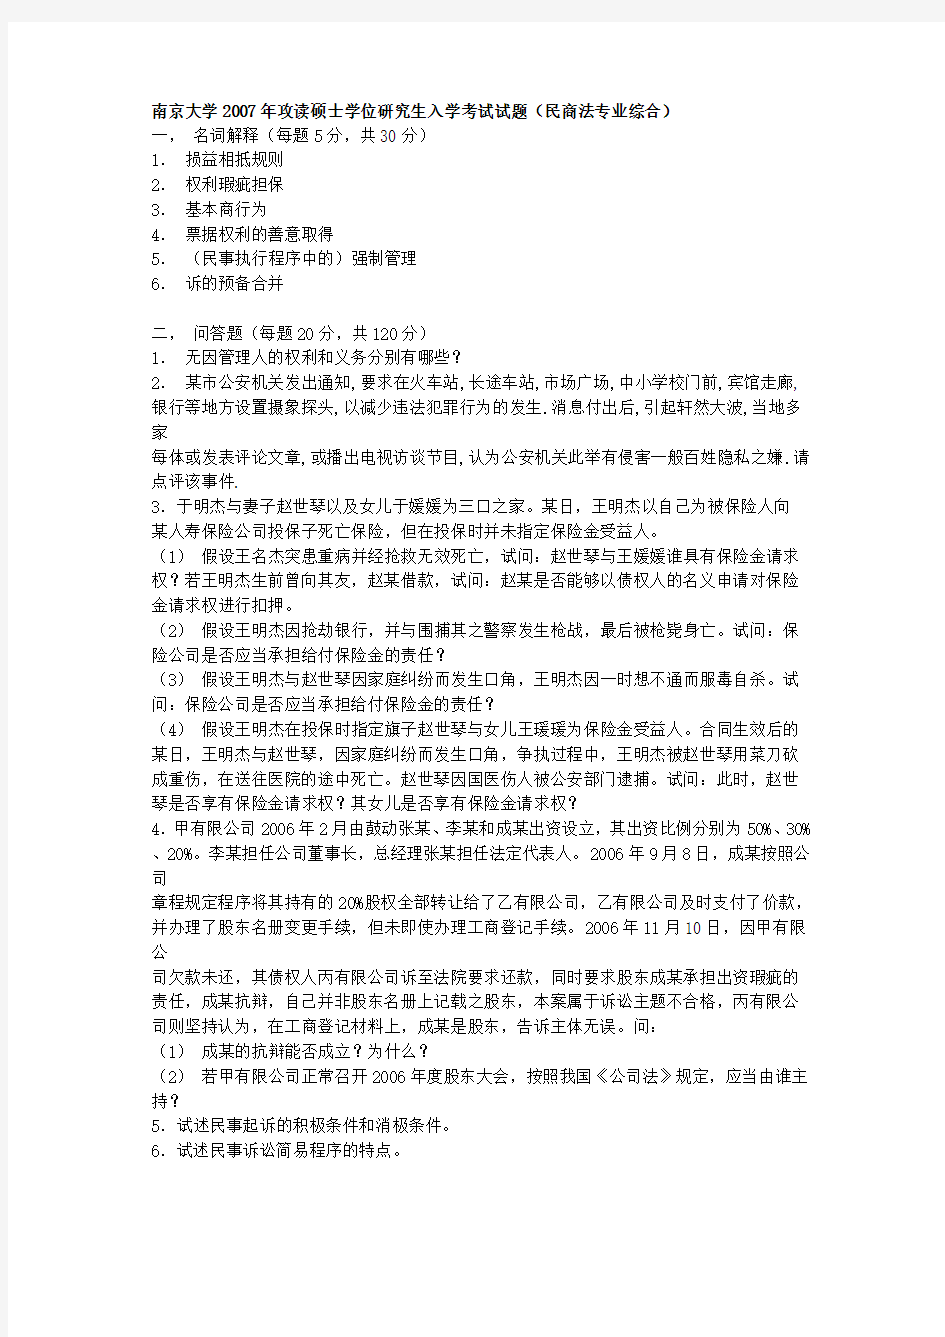 南京大学民商法硕士研究生入学考试试卷(1998年——2007年)